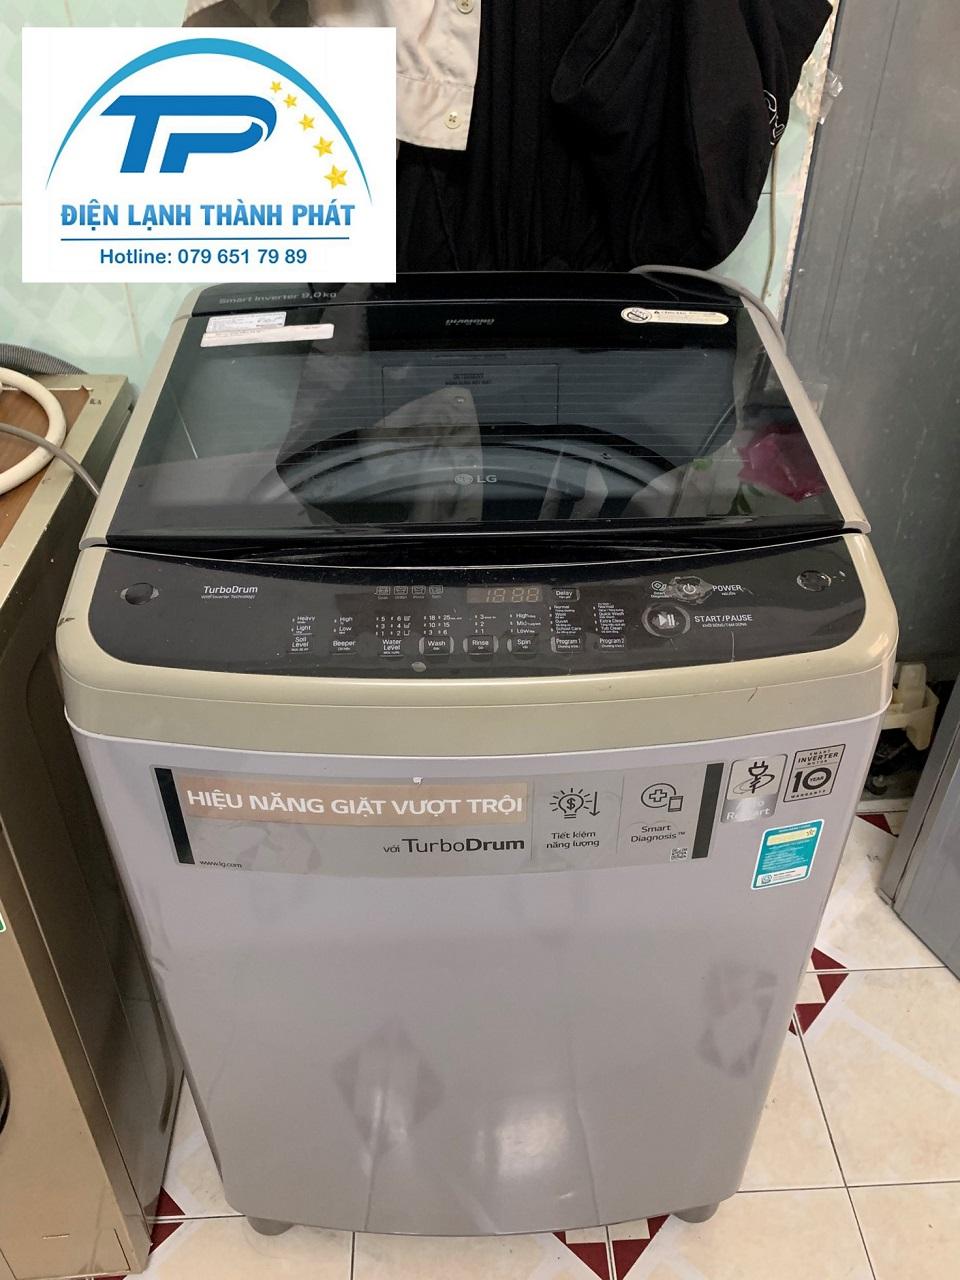 Điện lạnh Thành Phát - Đơn vị cung cấp dịch vụ sửa máy giặt Electrolux đáng tin cậy nhất.